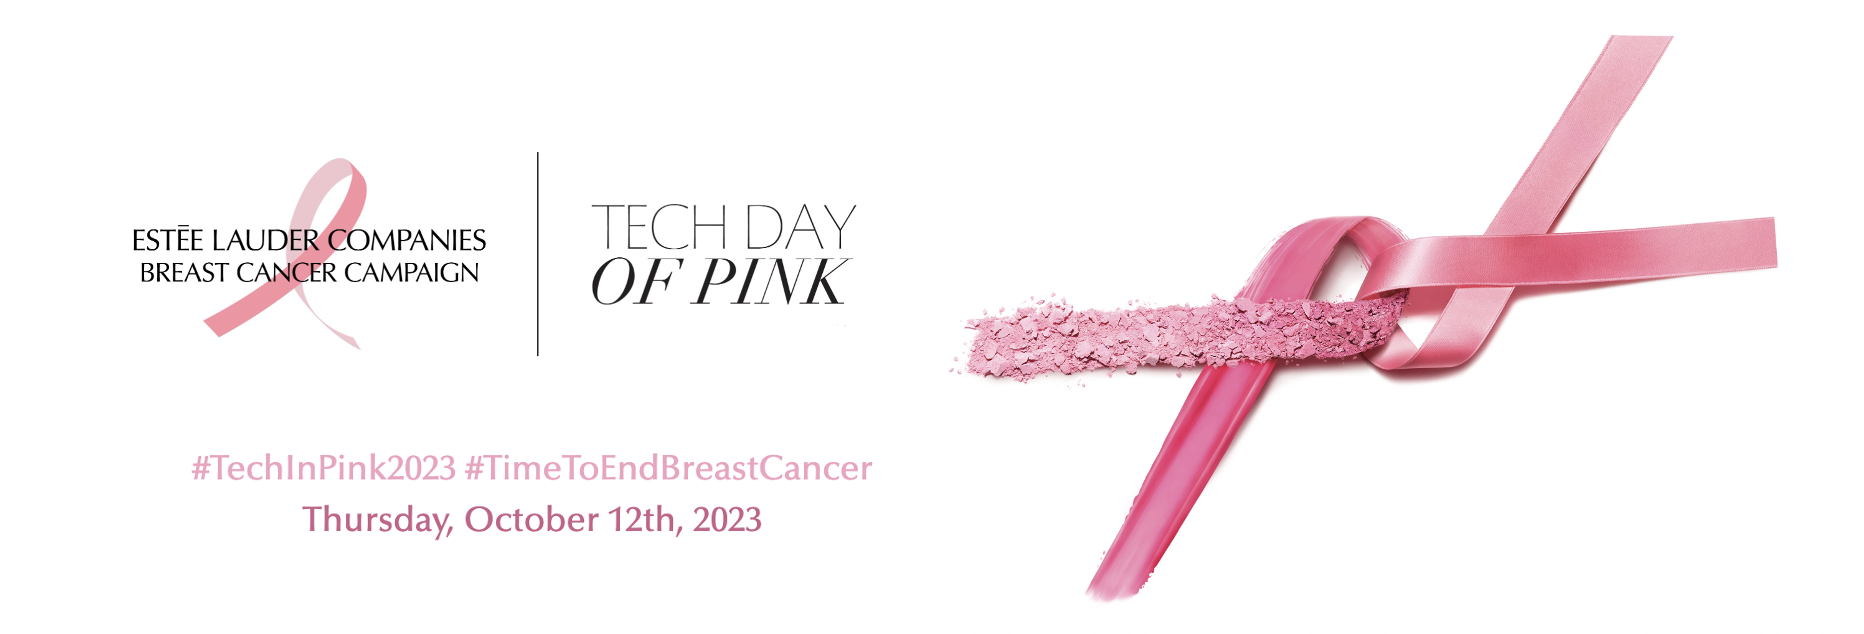 Revel Participates in Estée Lauder's Tech Day of Pink